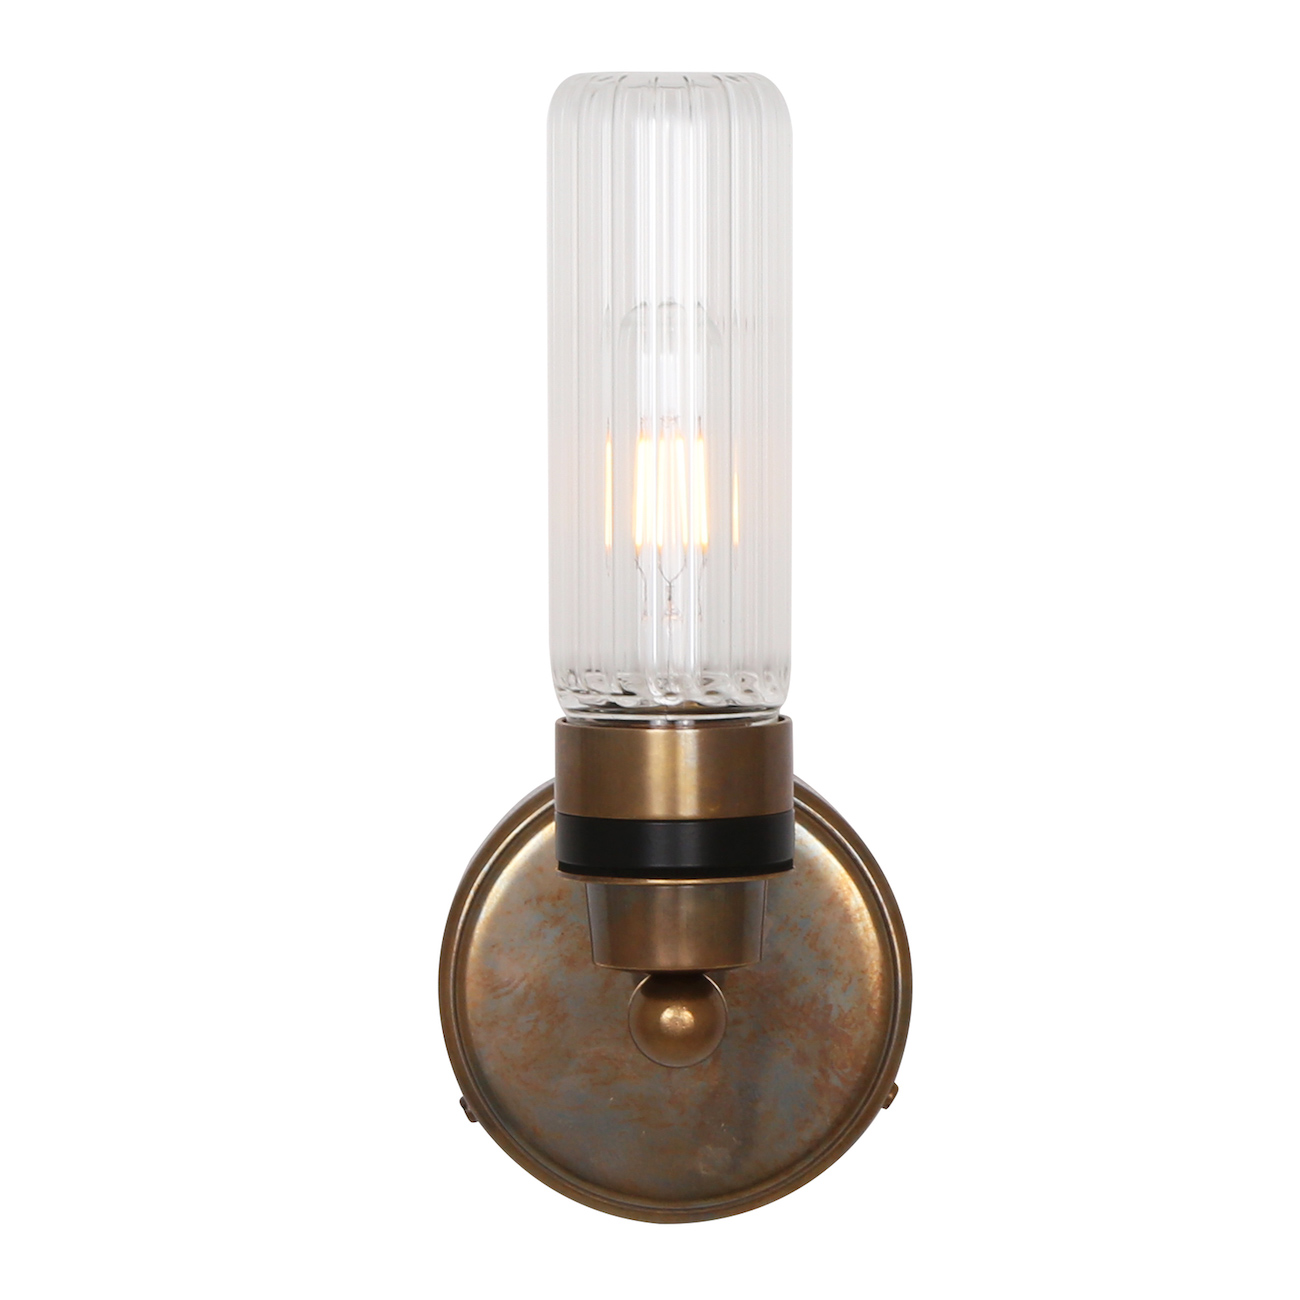 Badezimmer-Wandlampe mit klarem oder prismatischem Glaszylinder, IP65: Alt-Messing patiniert, prismatisches Glas